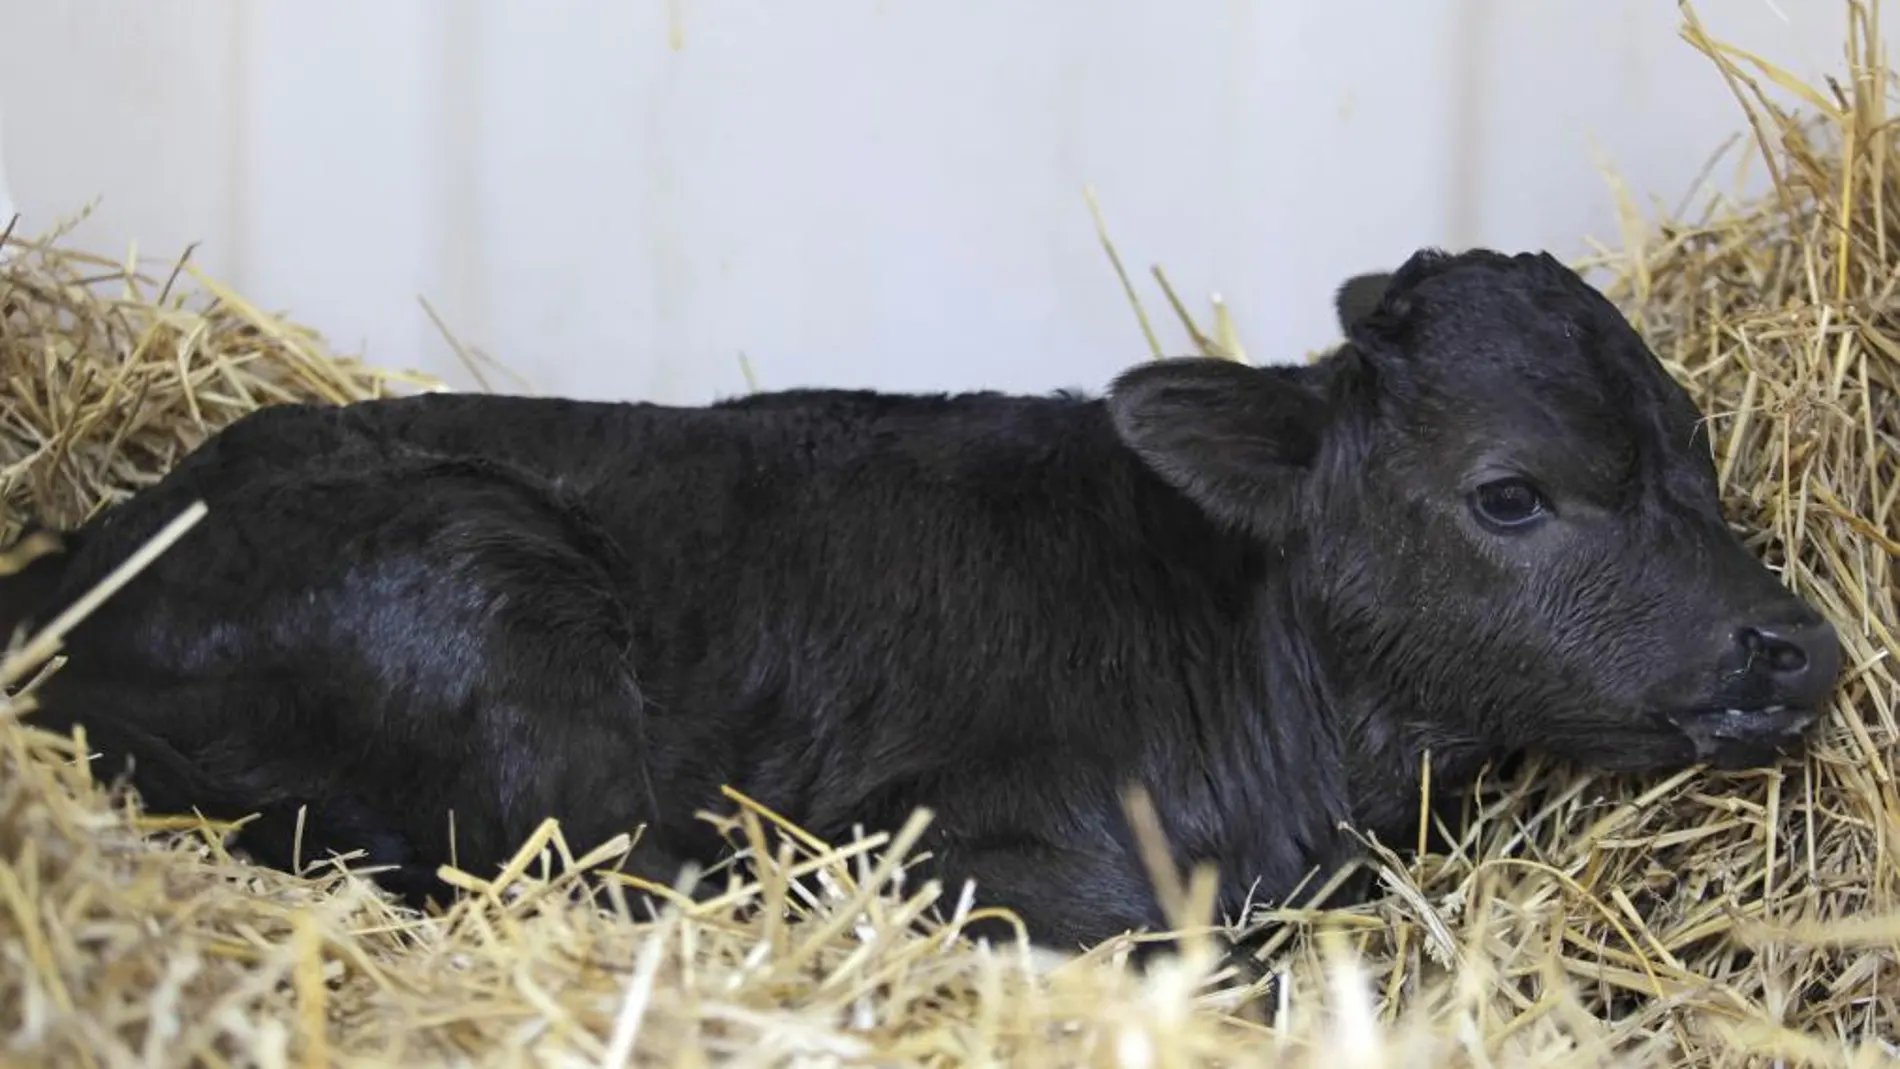 «Got», de la ganadería de Guardiola, supuso el primer eslabón en la clonación de toros de lidia